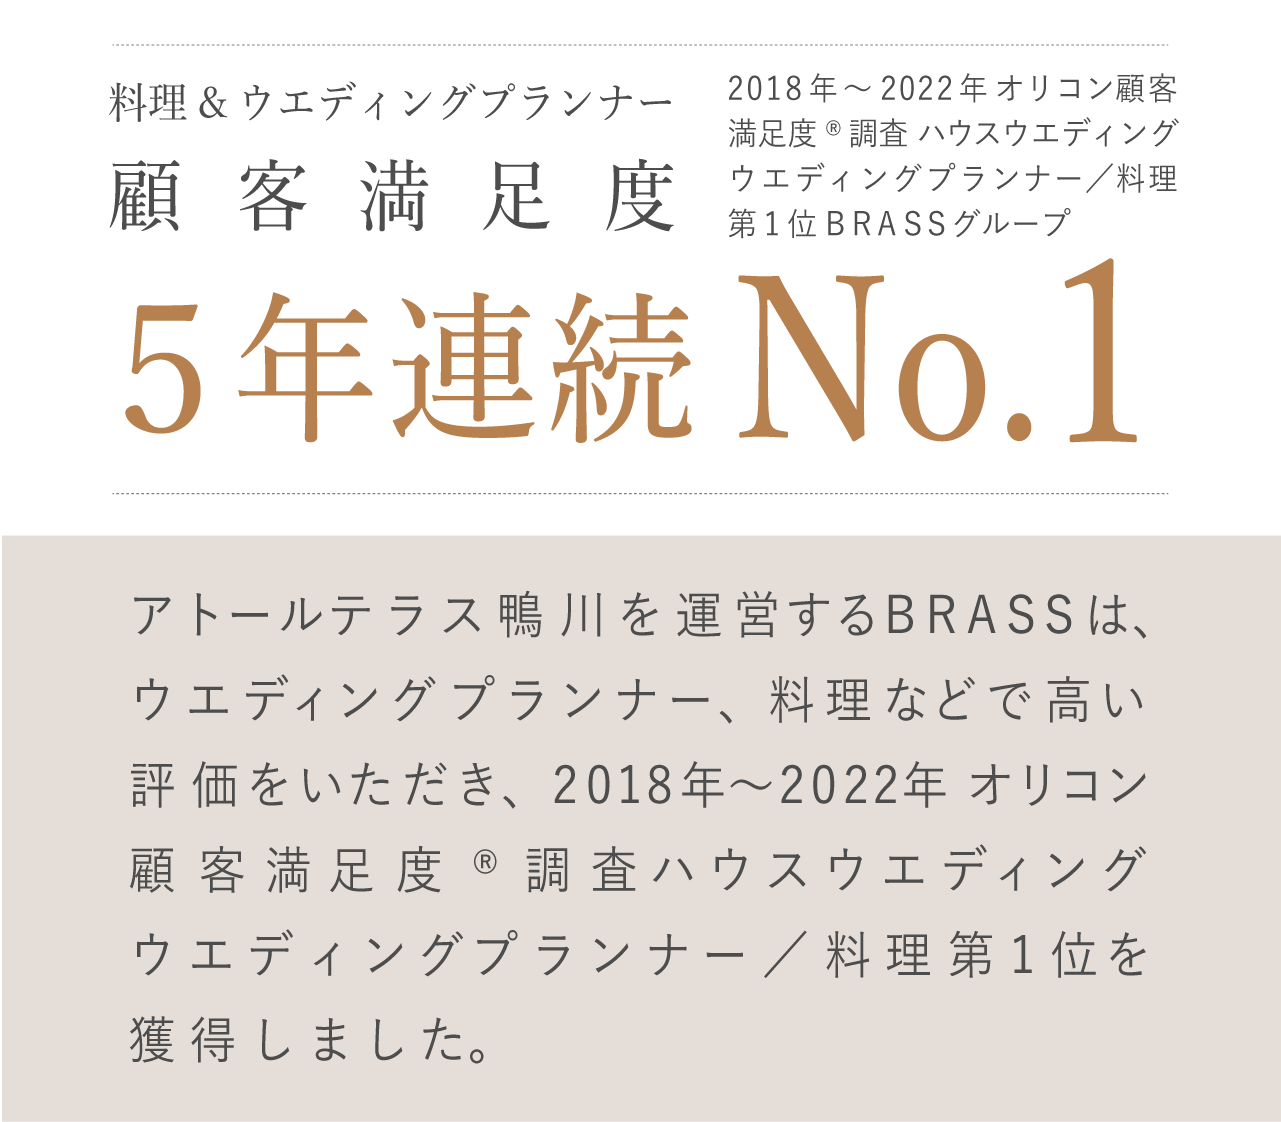 オリコン顧客満足度 3年連続No.1